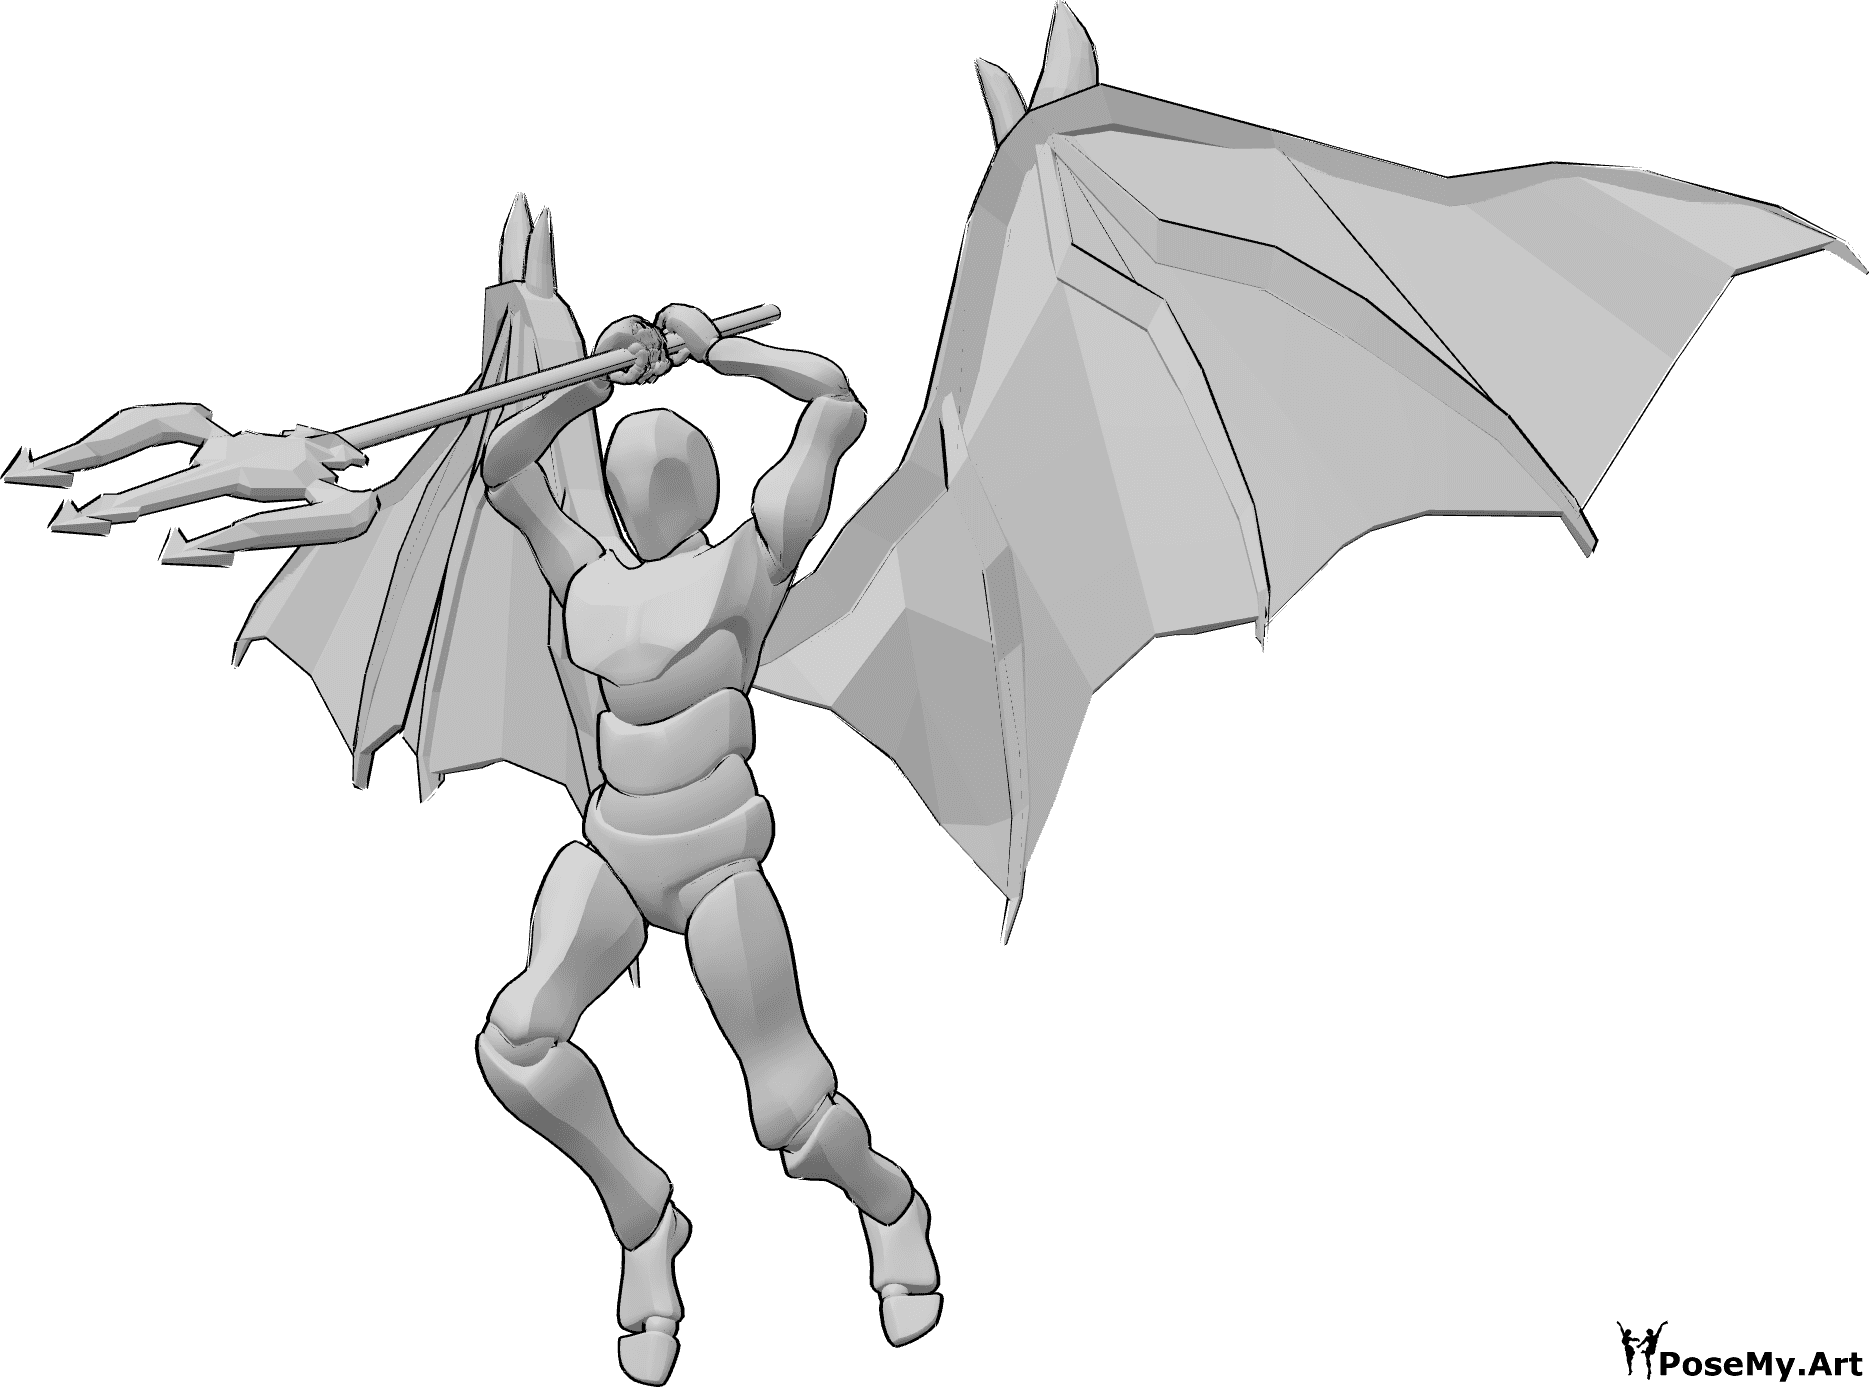 Référence des poses- Pose dynamique de l'attaque du démon - L'homme aux ailes de diable saute haut pour attaquer, tenant son trident à deux mains au-dessus de sa tête.